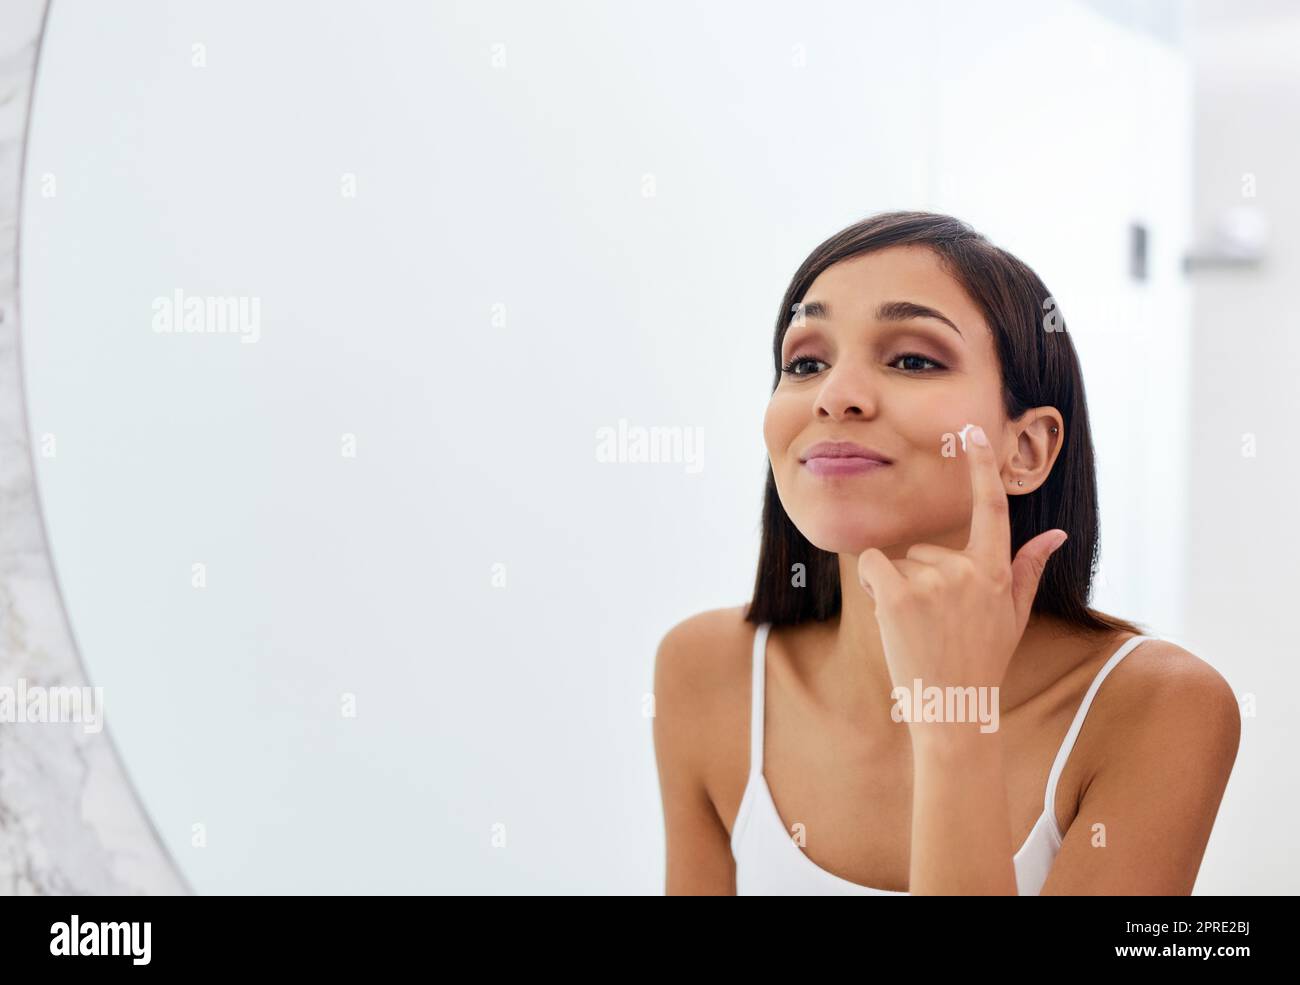 Halten Sie sich an eine Routine, die am besten für Sie funktioniert. Eine attraktive junge Frau Anwendung Feuchtigkeitscreme auf ihr Gesicht im Badezimmer. Stockfoto